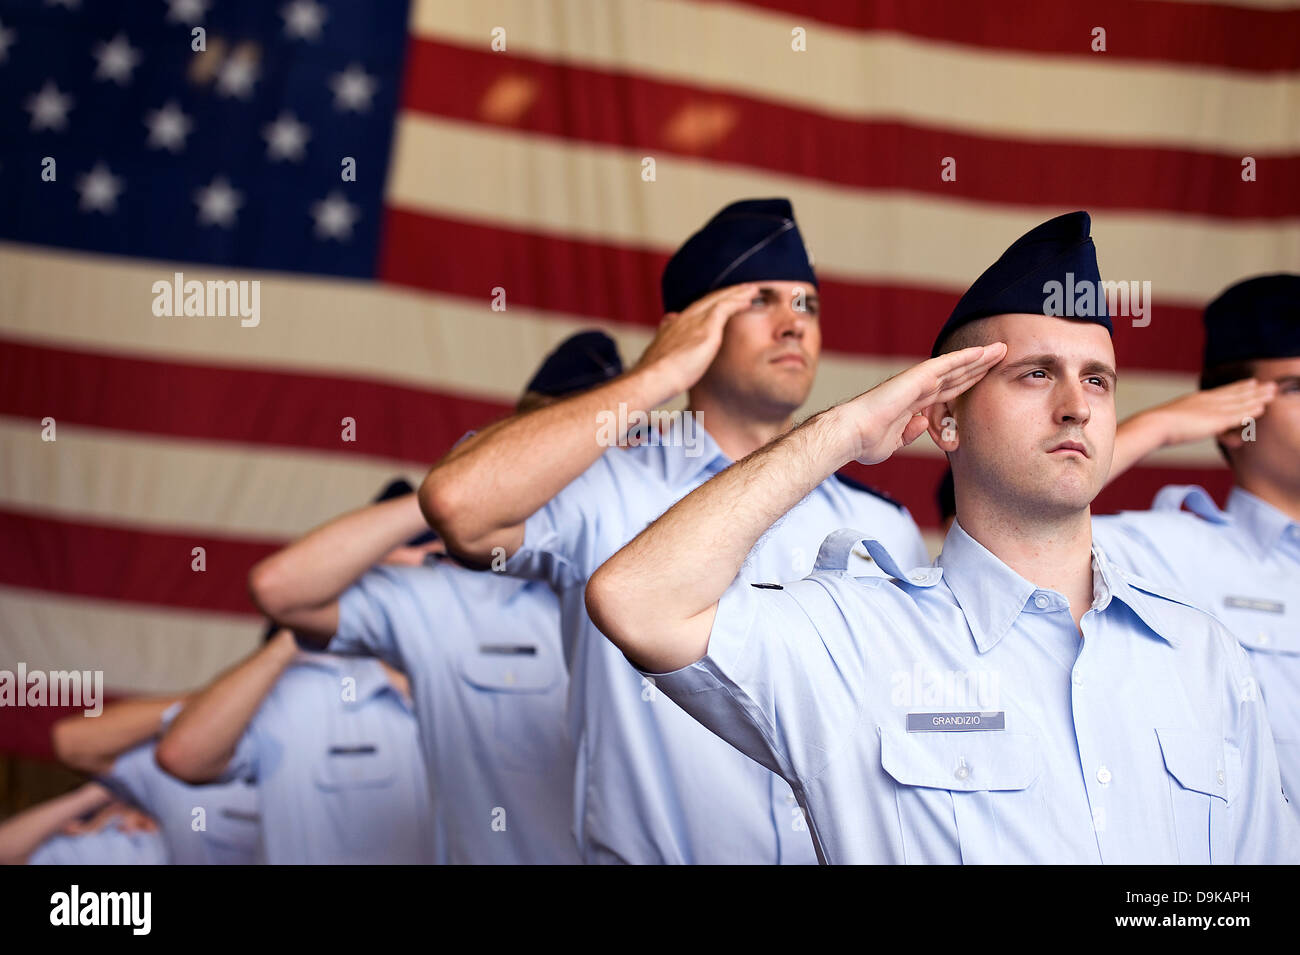 La Fuerza Aérea de EE.UU. aviadores el saludo a la bandera norteamericana durante el canto de la Star Spangled Banner una ceremonia de cambio de mando el 13 de mayo de 2013 en la Base Aérea de Kadena, Japón. Foto de stock